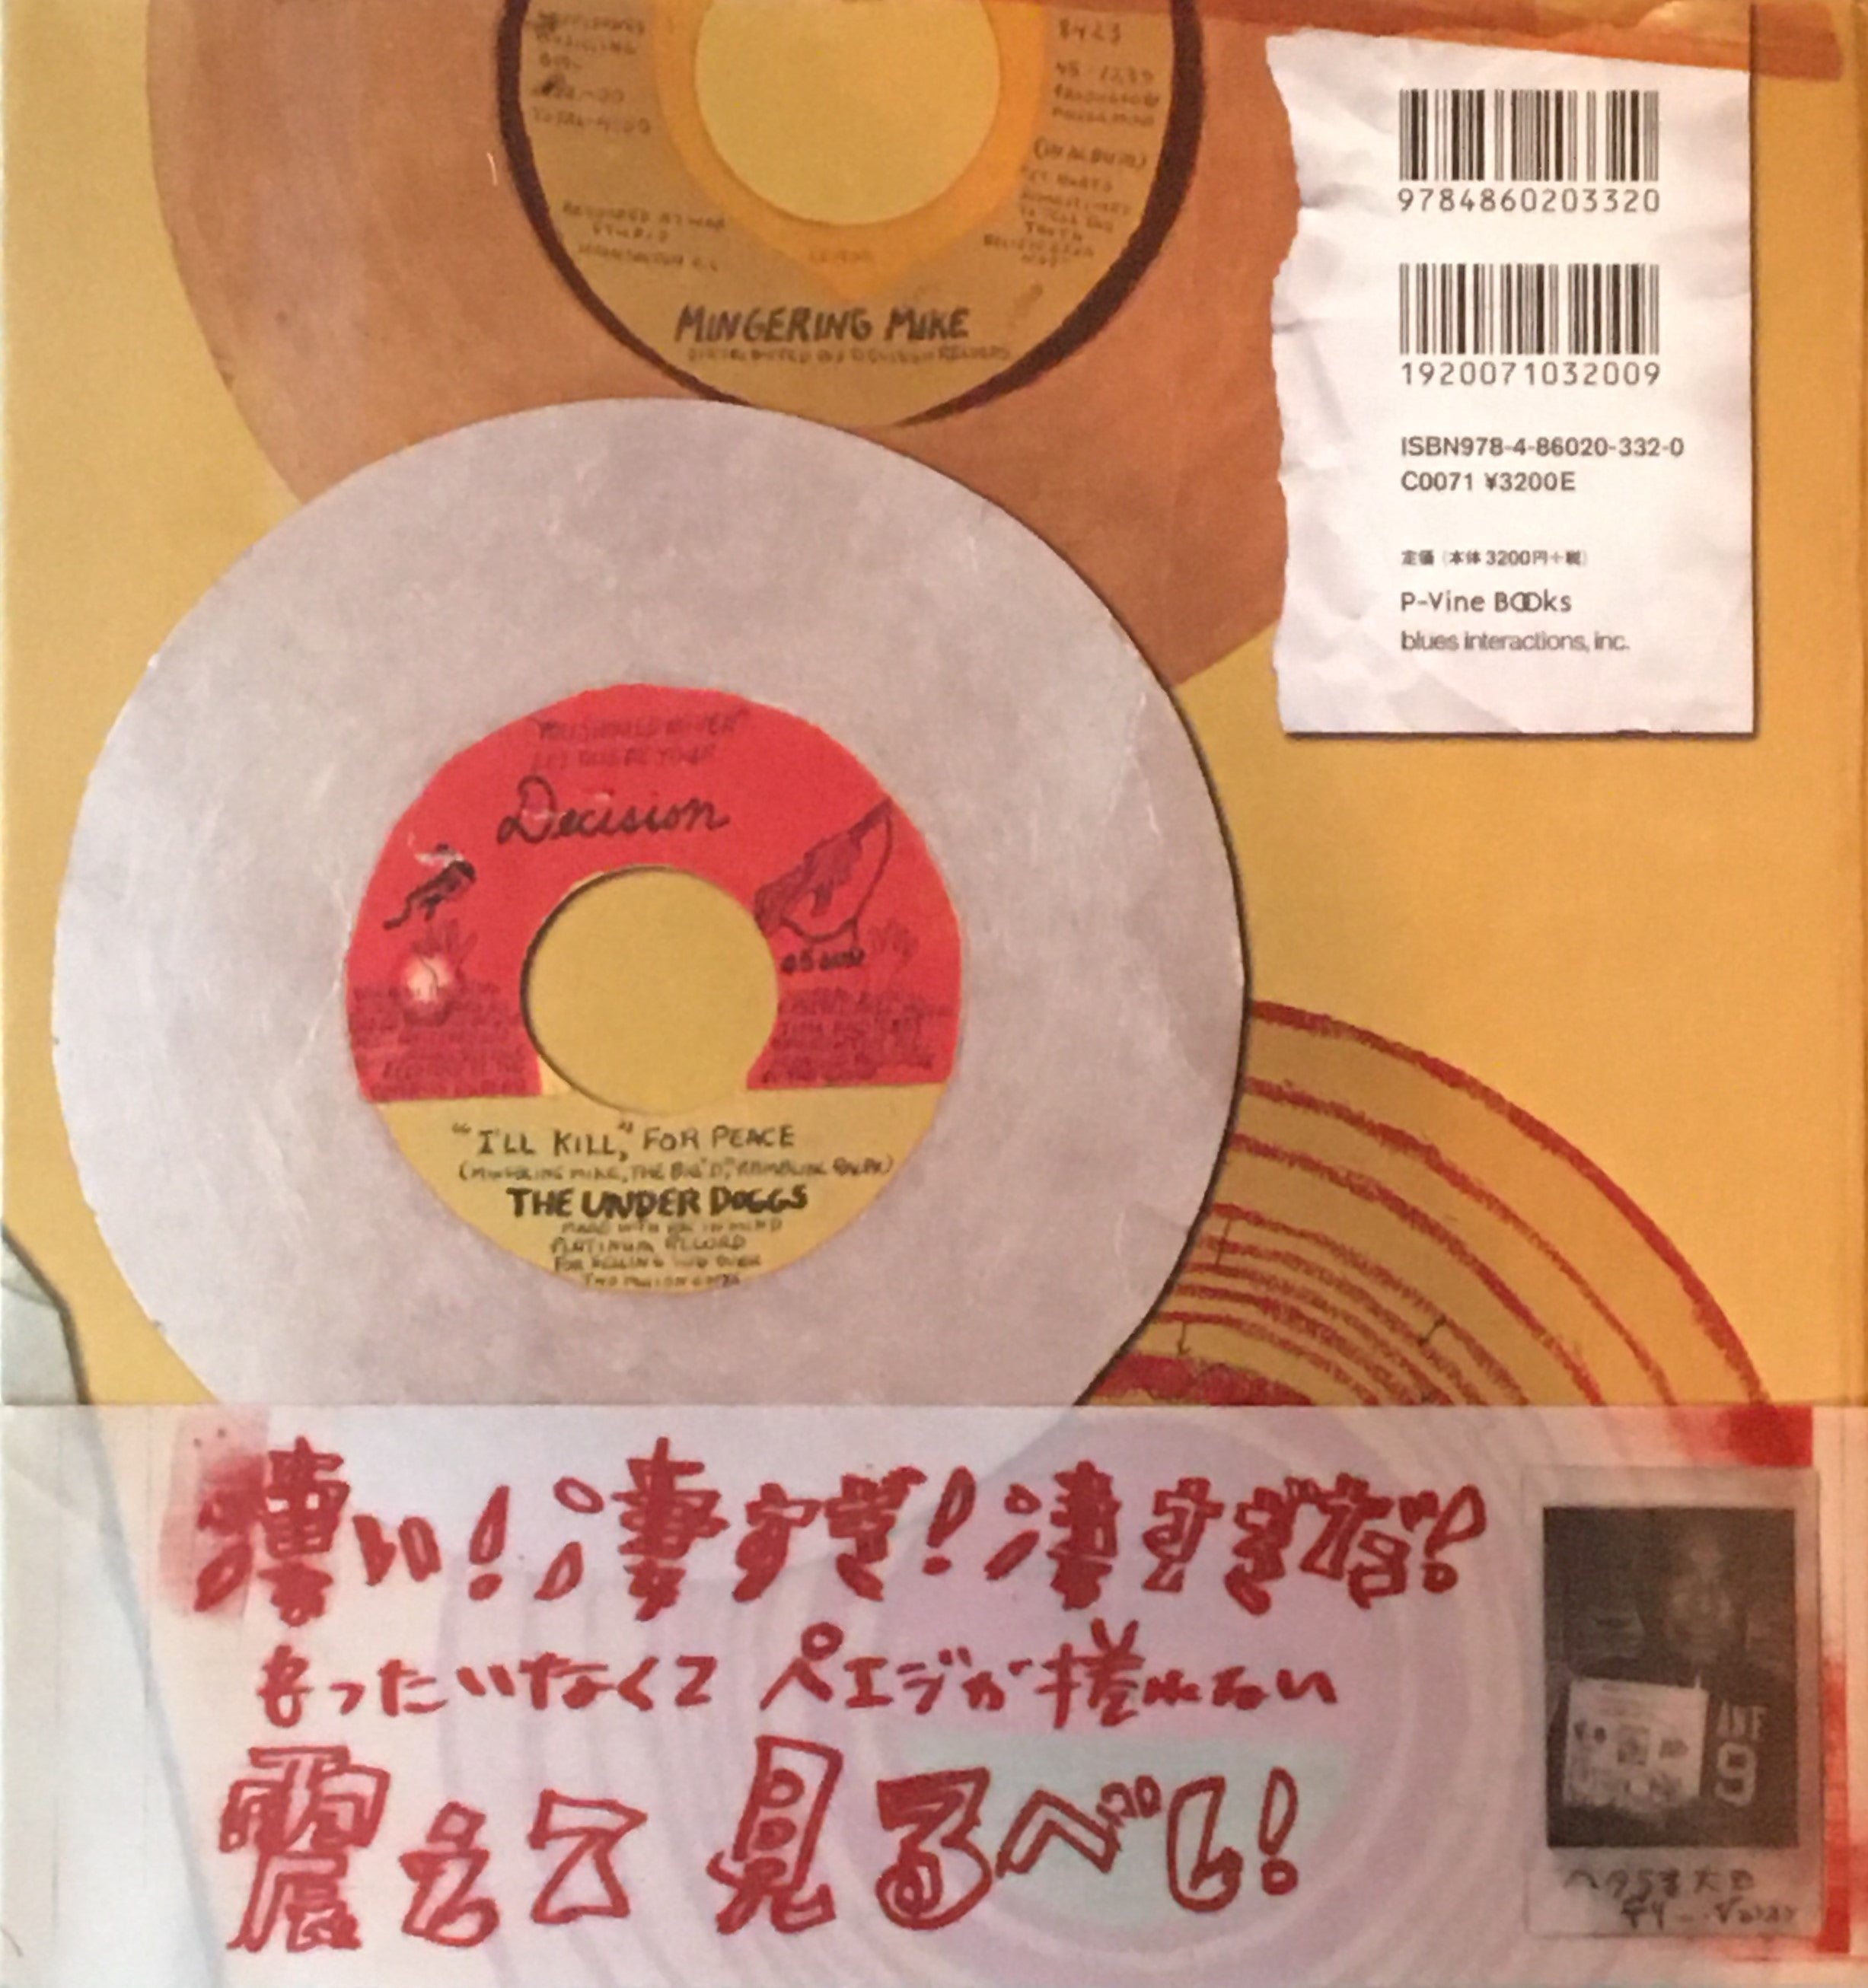 ミンガリング・マイクの妄想レコードの世界 アウトサイダーソウルアート